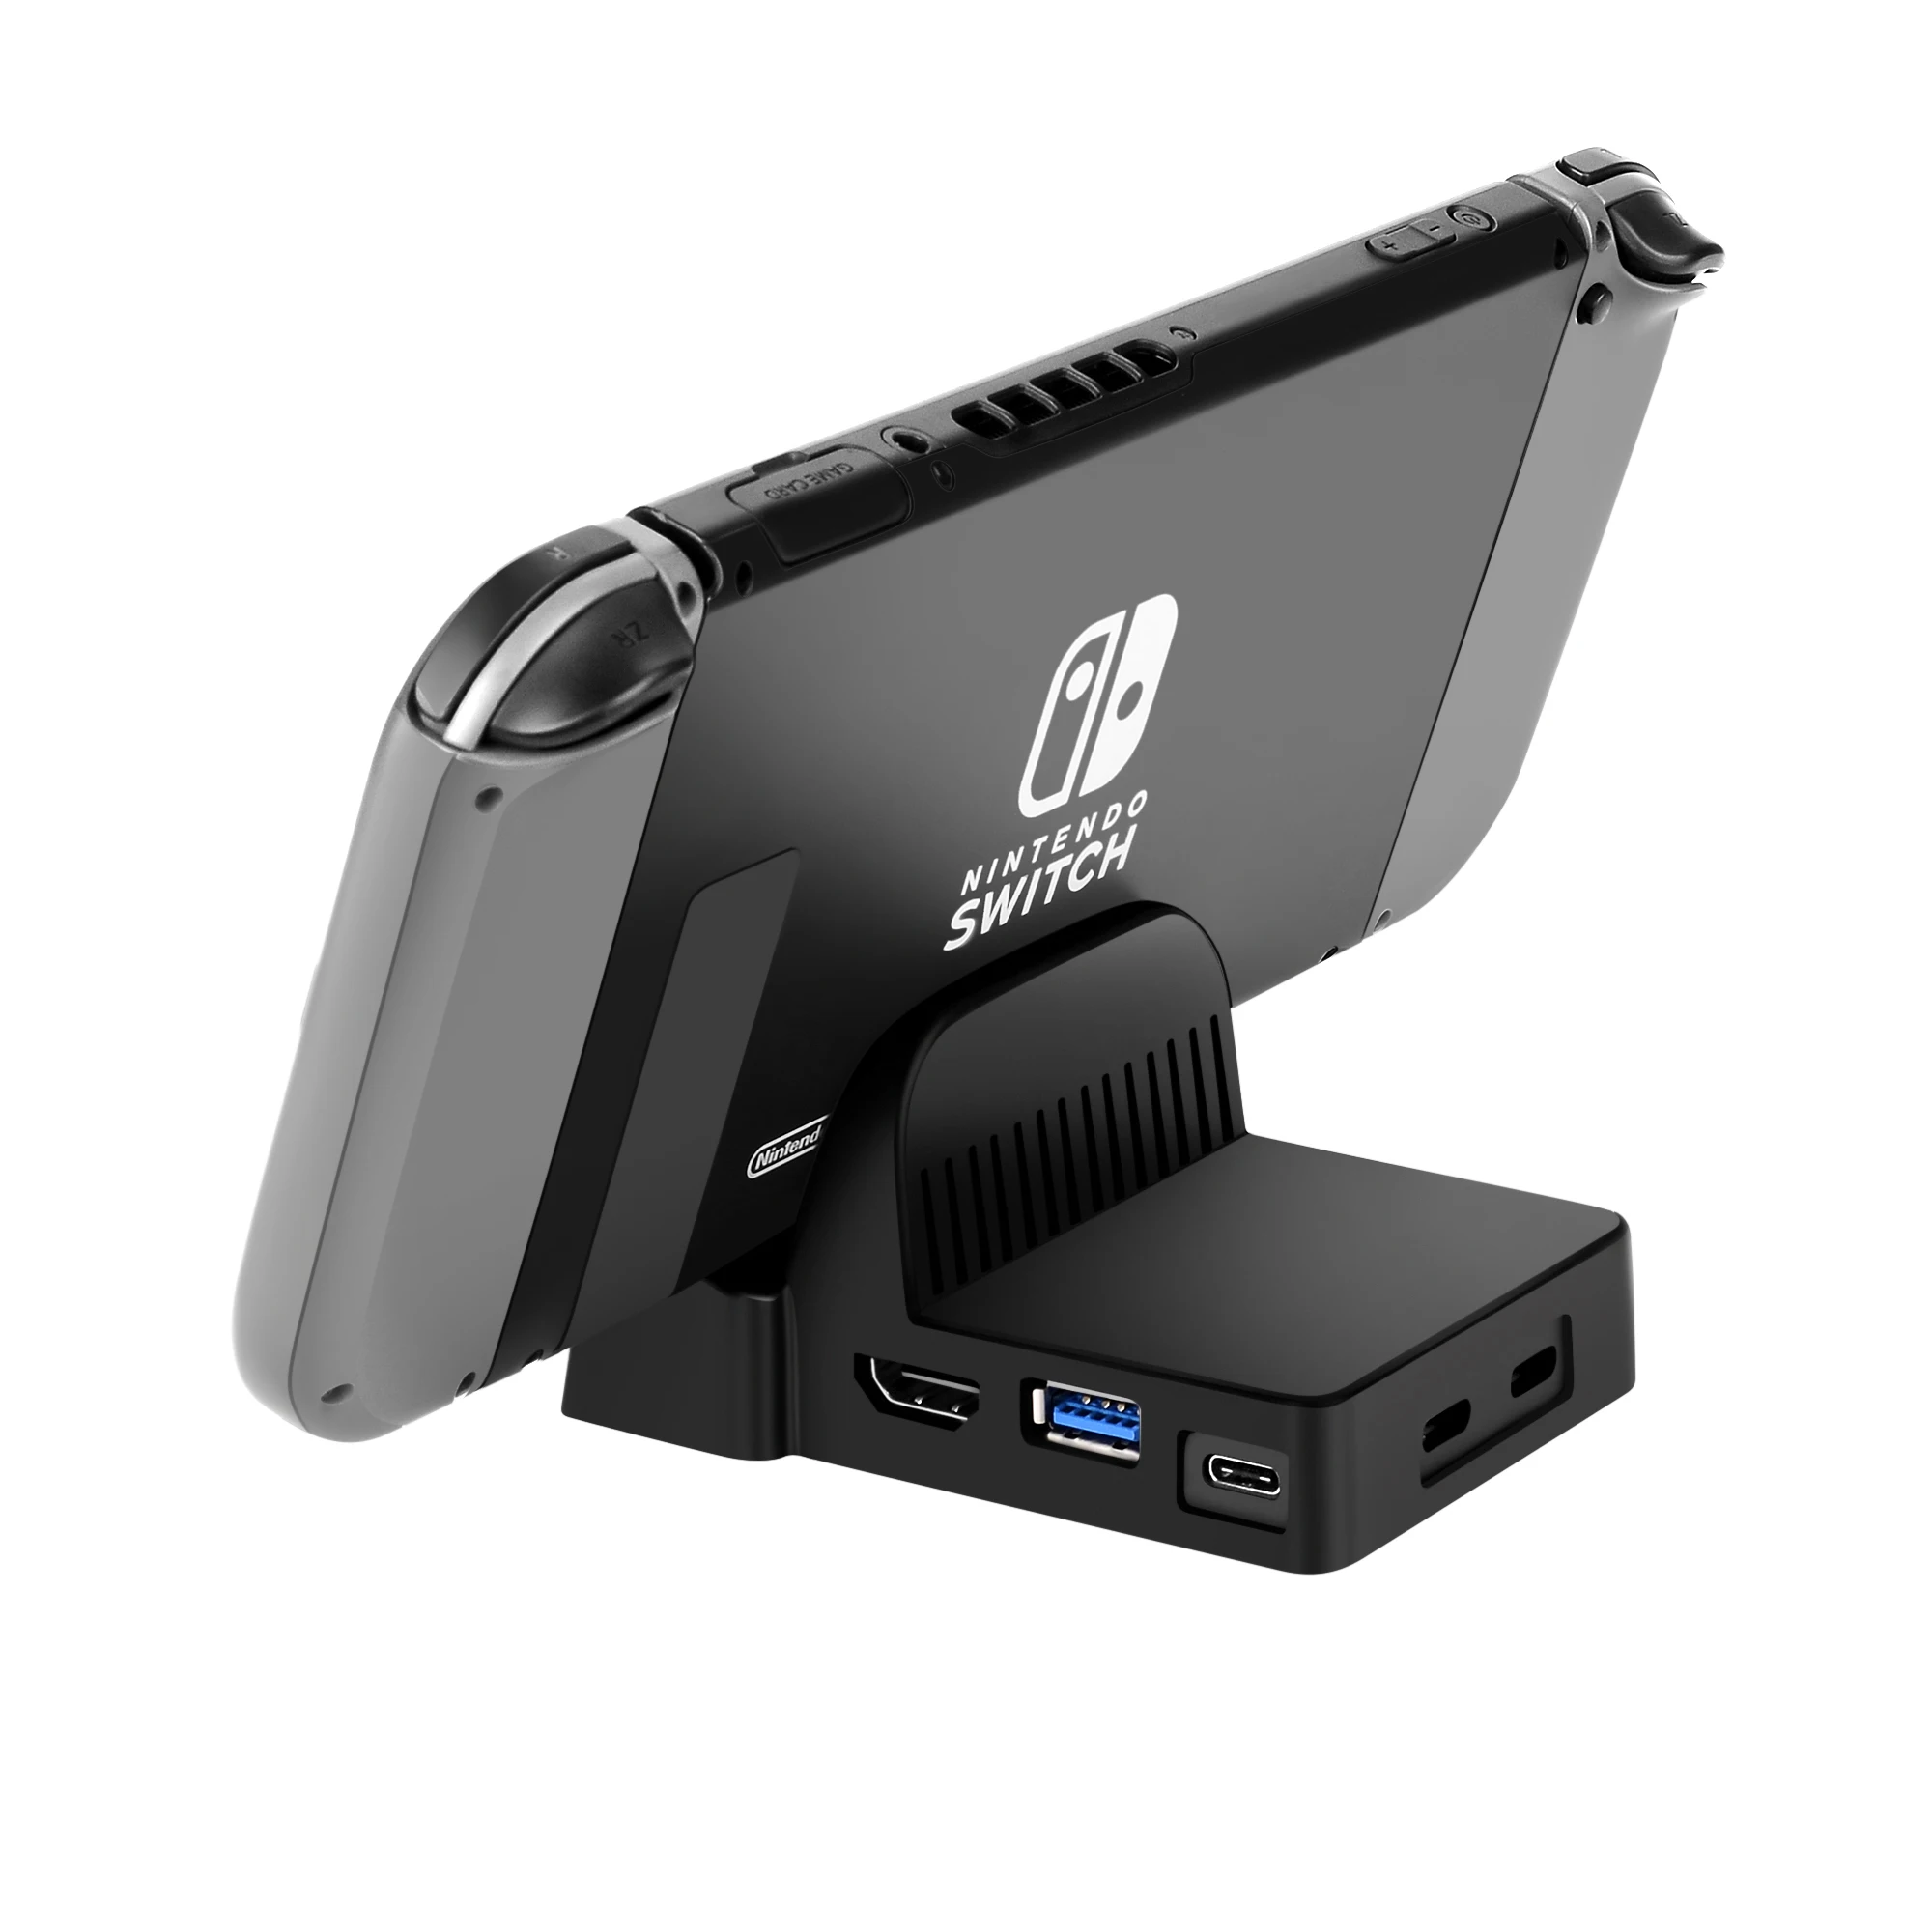 AOLION custodia di ricambio portatile per Nintend Switch Dock Base di raffreddamento DIY Modifie Base Mini videogioco portatile Consol